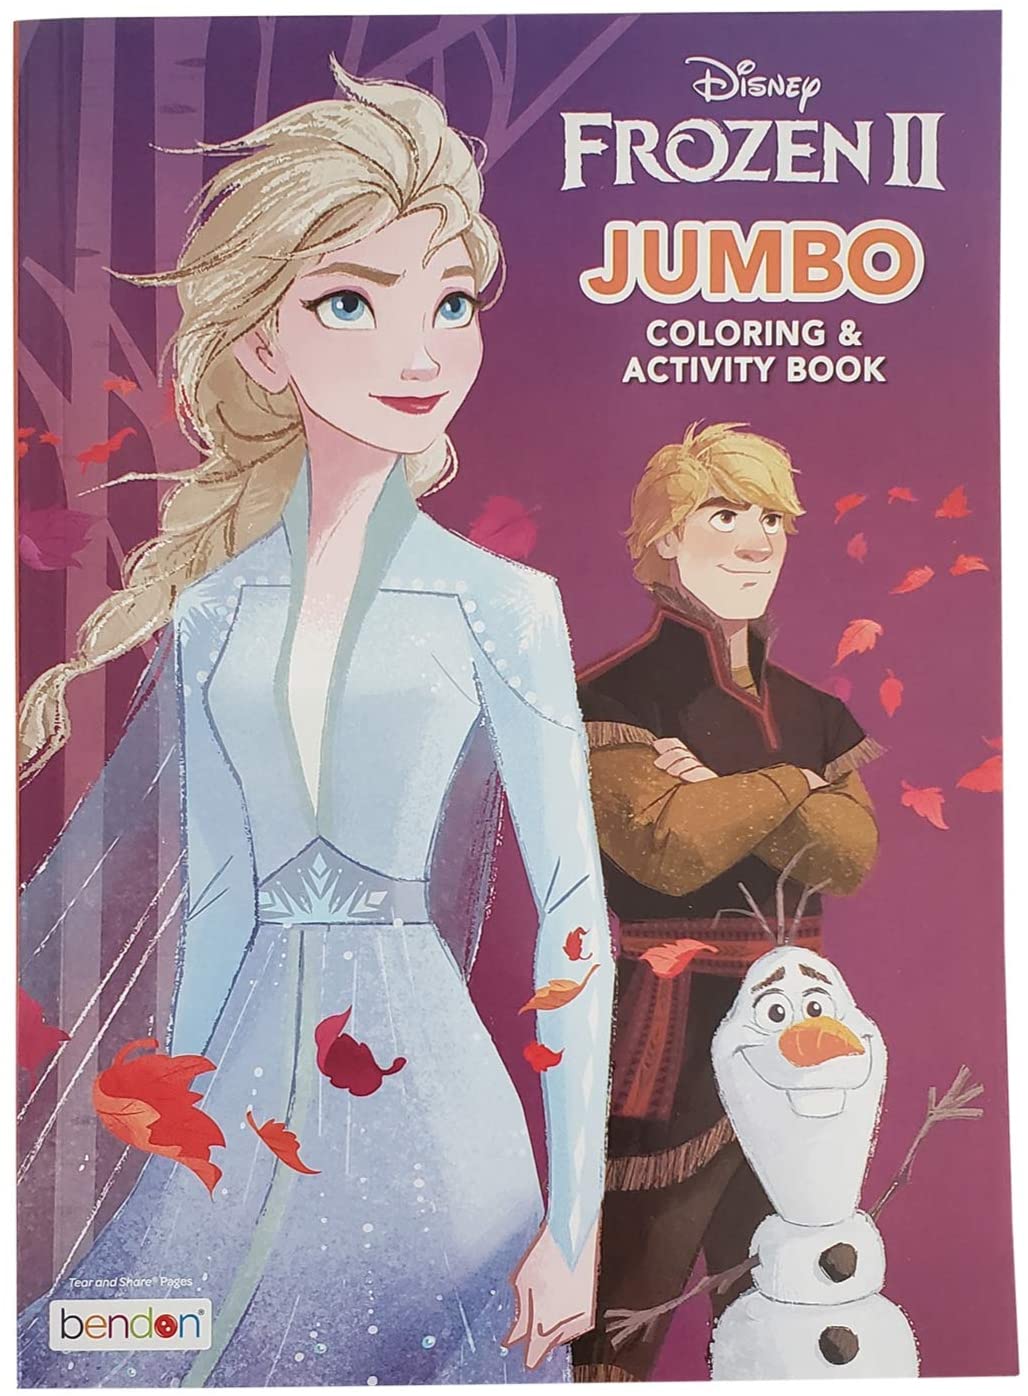 Disney Frozen II Jumbo Coloring & Activity Book